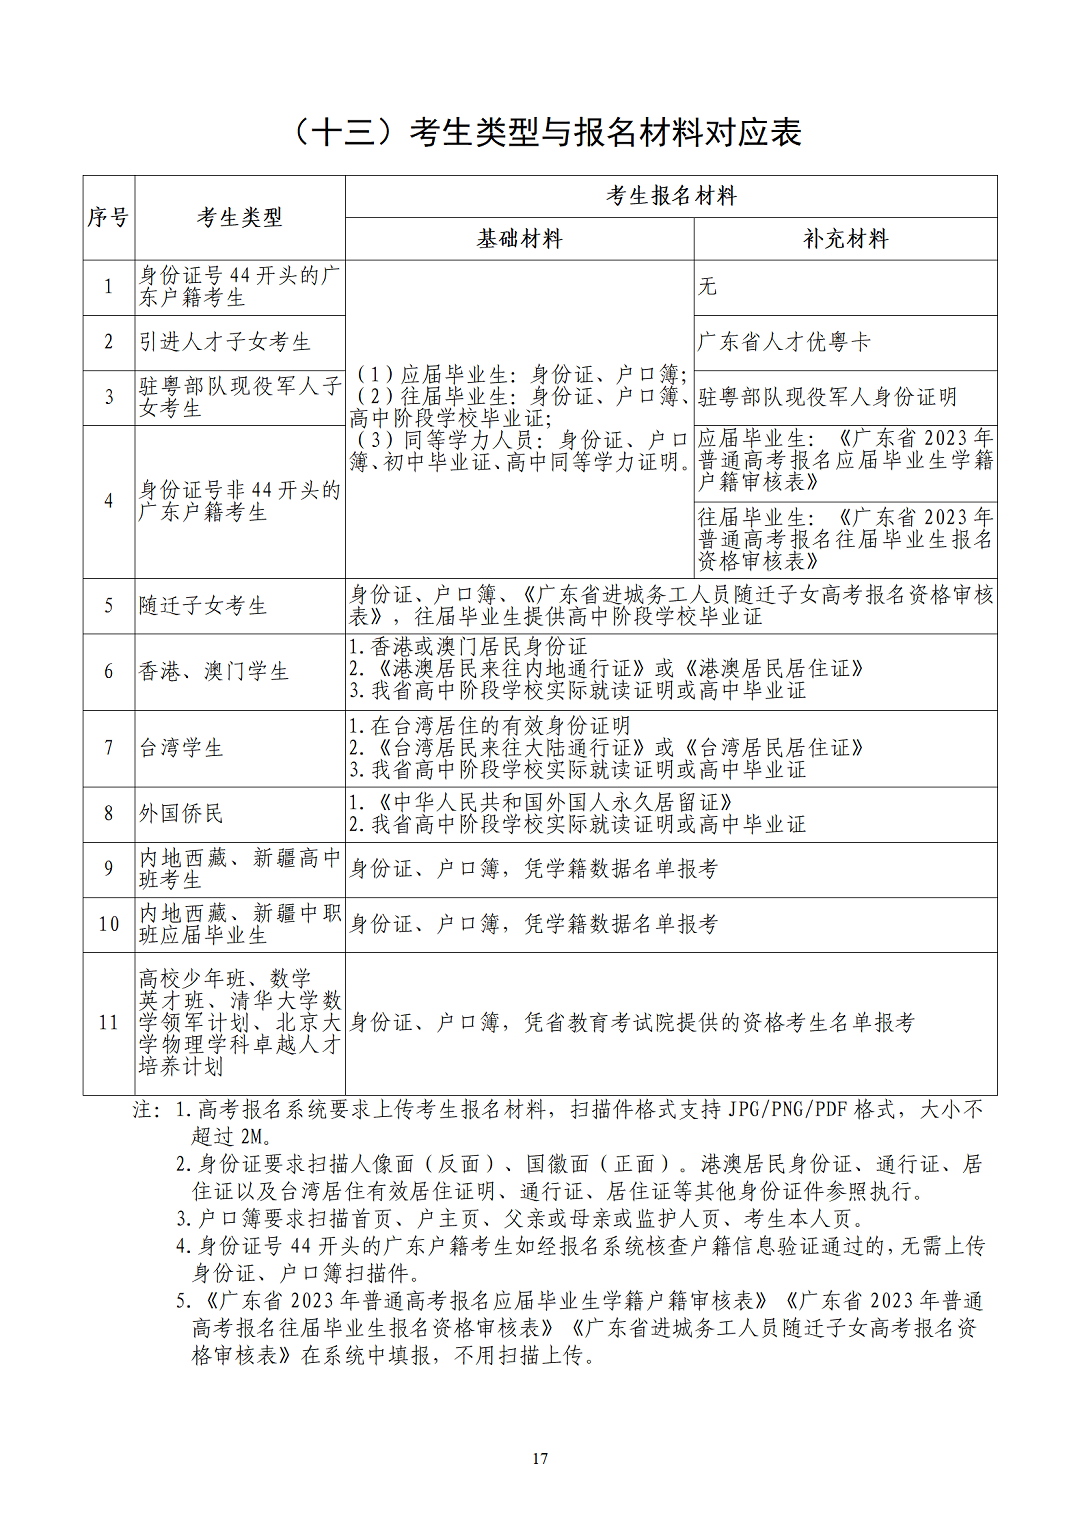 （有封面）2023年深圳高考报名手册v4.0-1024-A4版本-最终_19.png